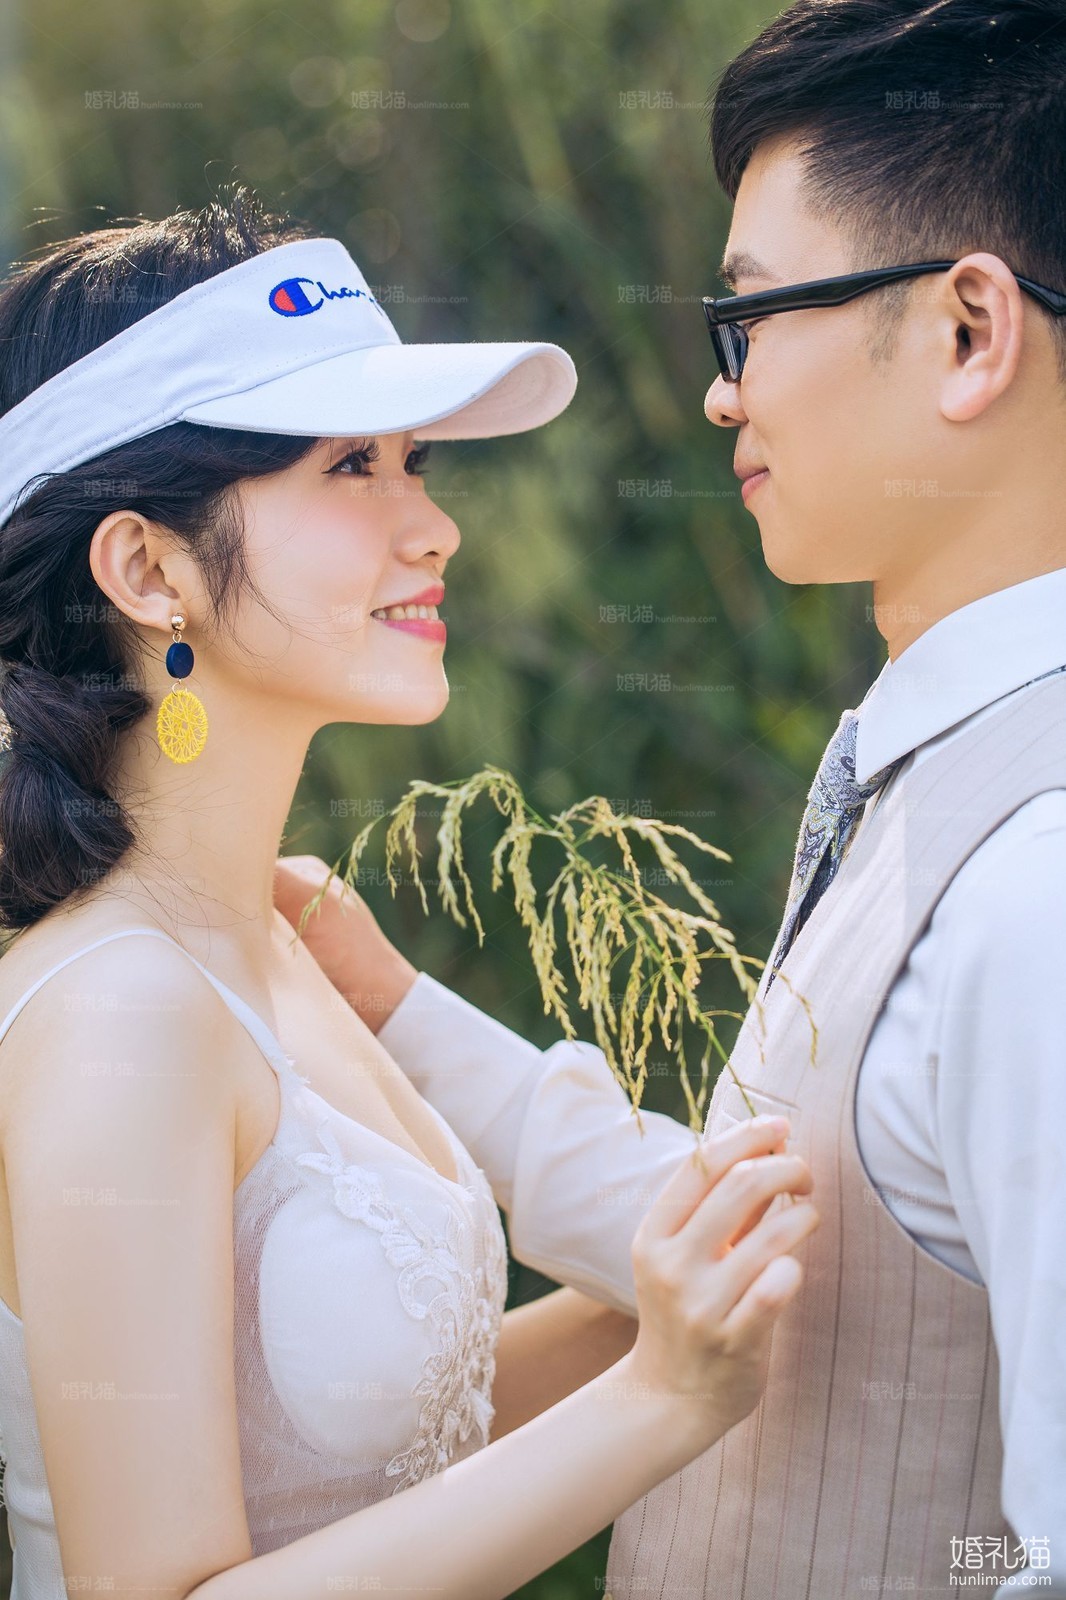 2018年11月广州结婚照,,湛江婚纱照,婚纱照图片